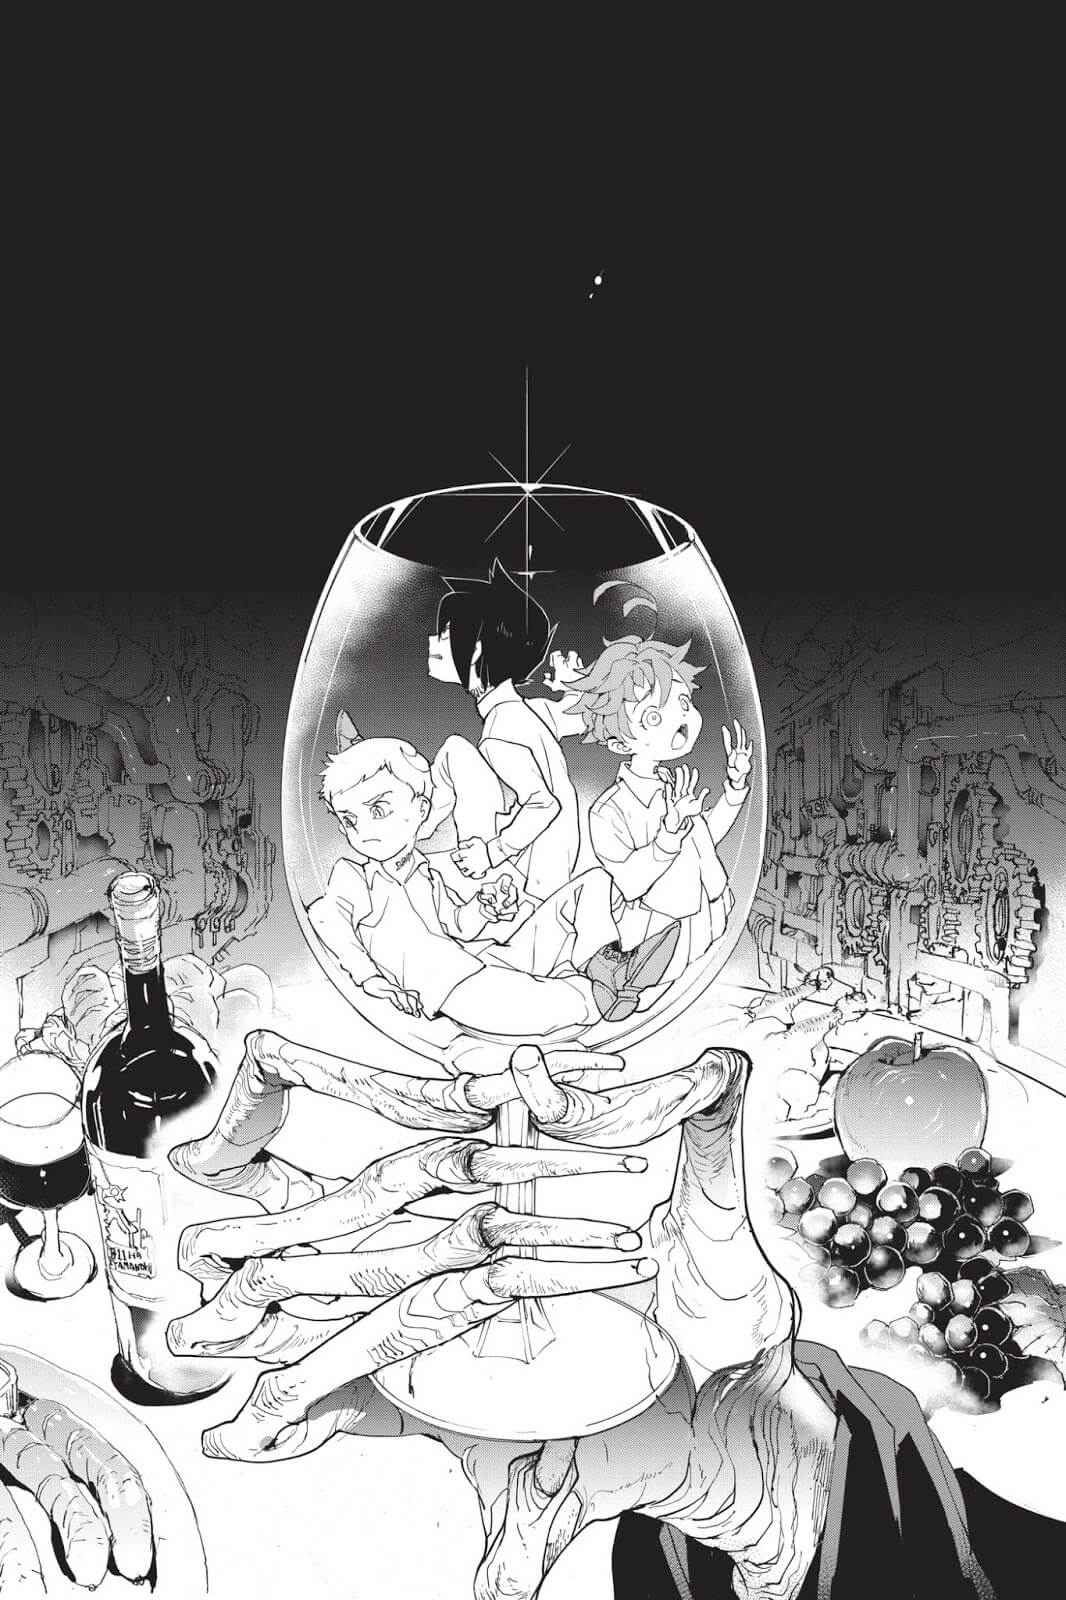 The Promised Neverland Manga